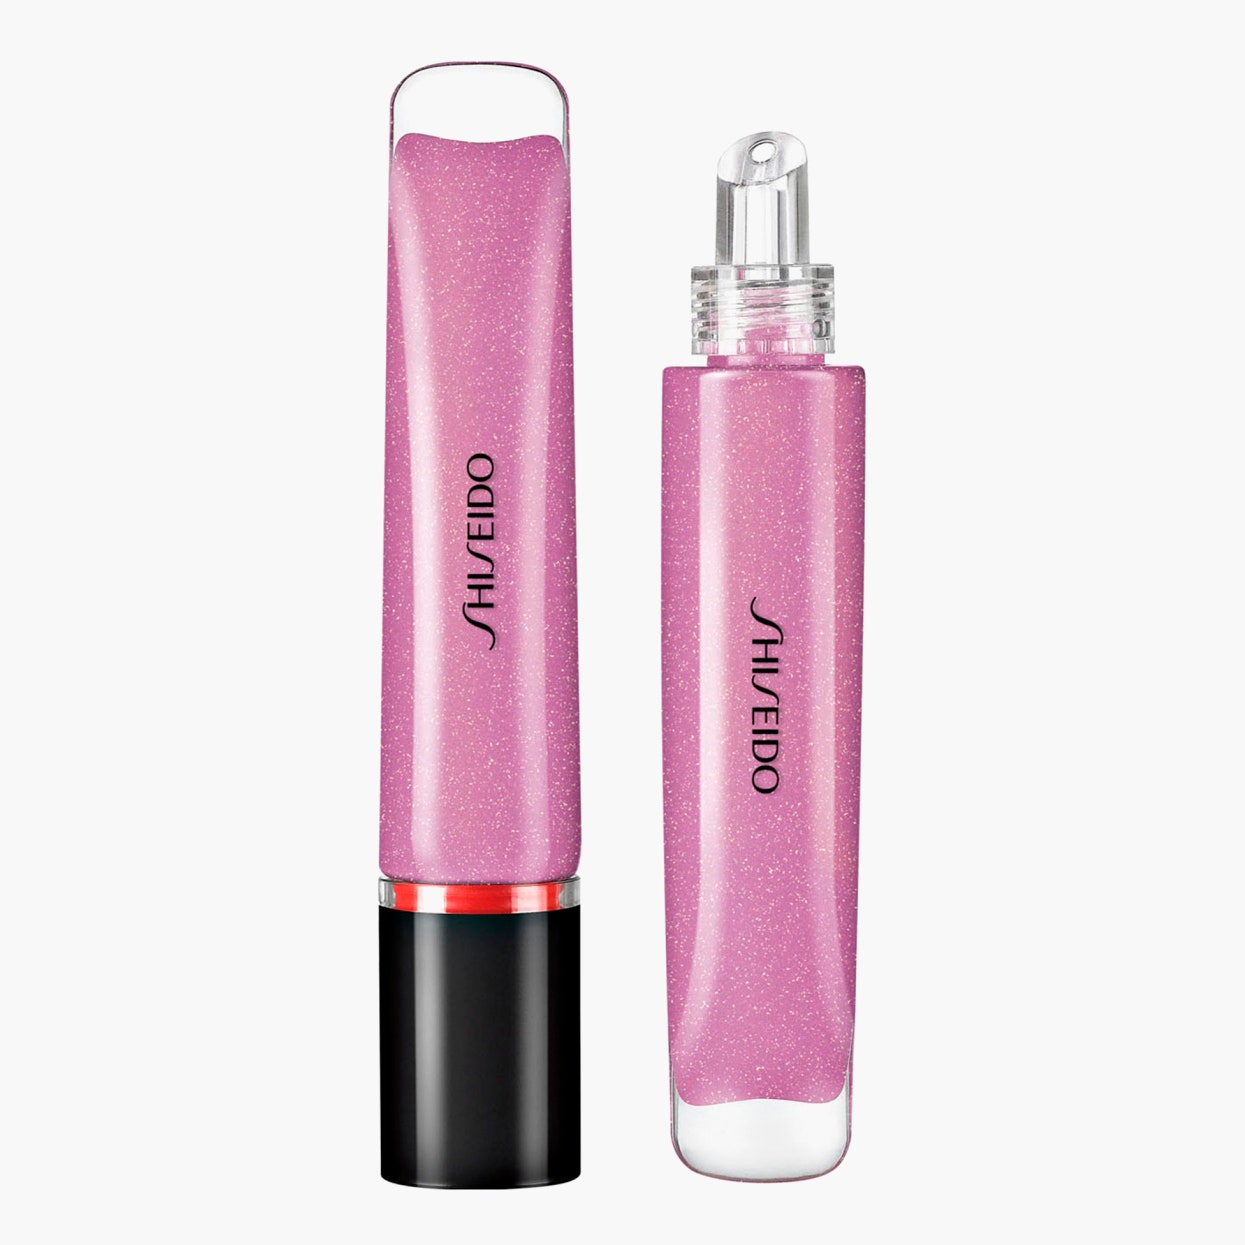 Ультрасияющий блеск для губ Shimmer Gel 09 Suisho Lilac Shiseido 2000 рублей